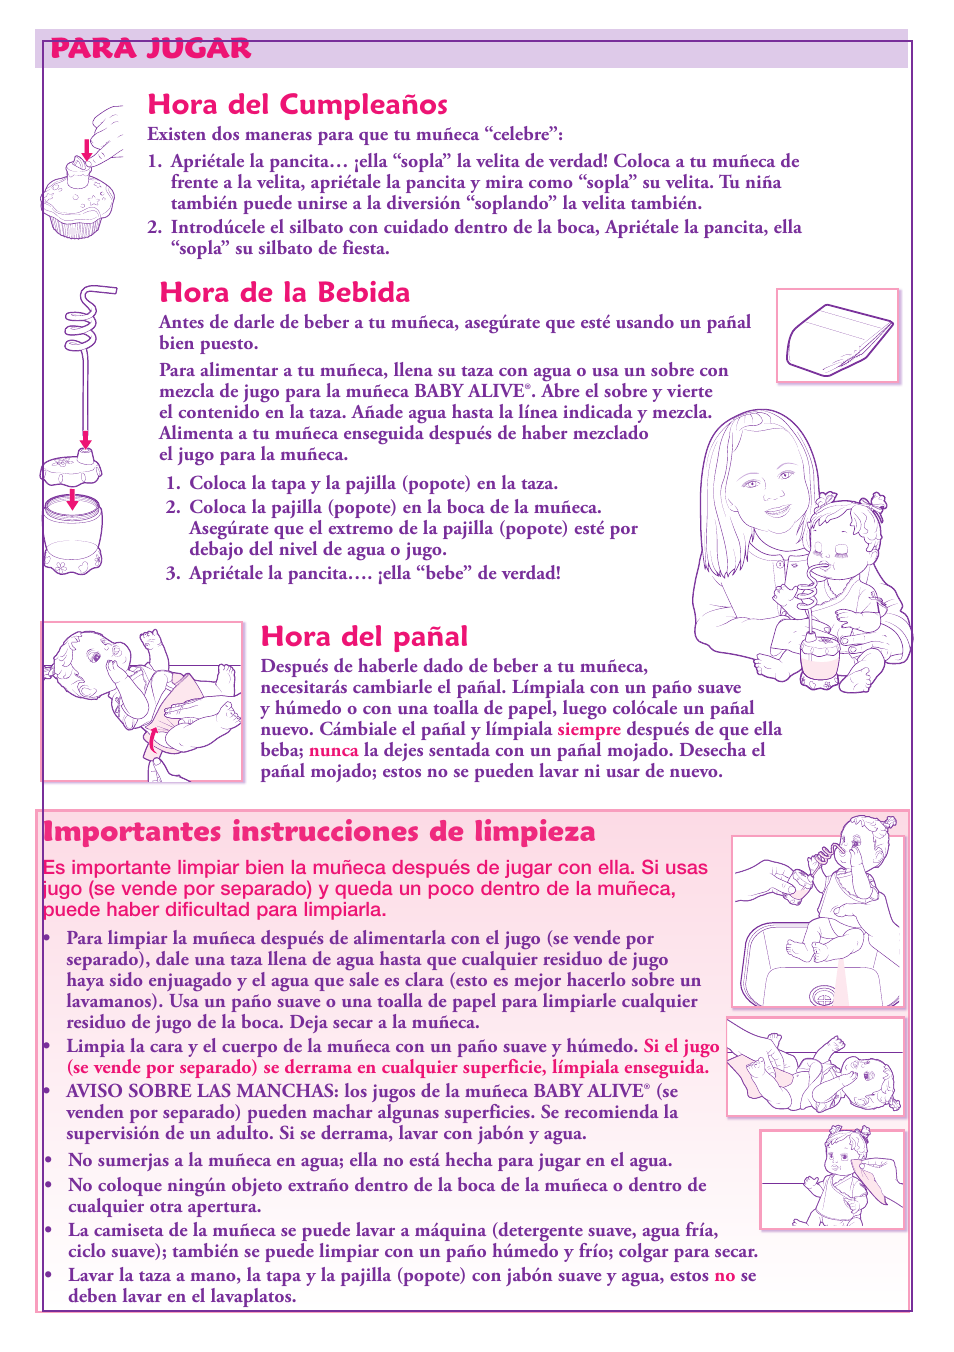 Para jugar hora del pañal, Hora de la bebida, Importantes instrucciones de  limpieza | Hasbro Baby Alive Sip 'N Slurp Doll 18920 User Manual | Page 4 /  4 | Original mode